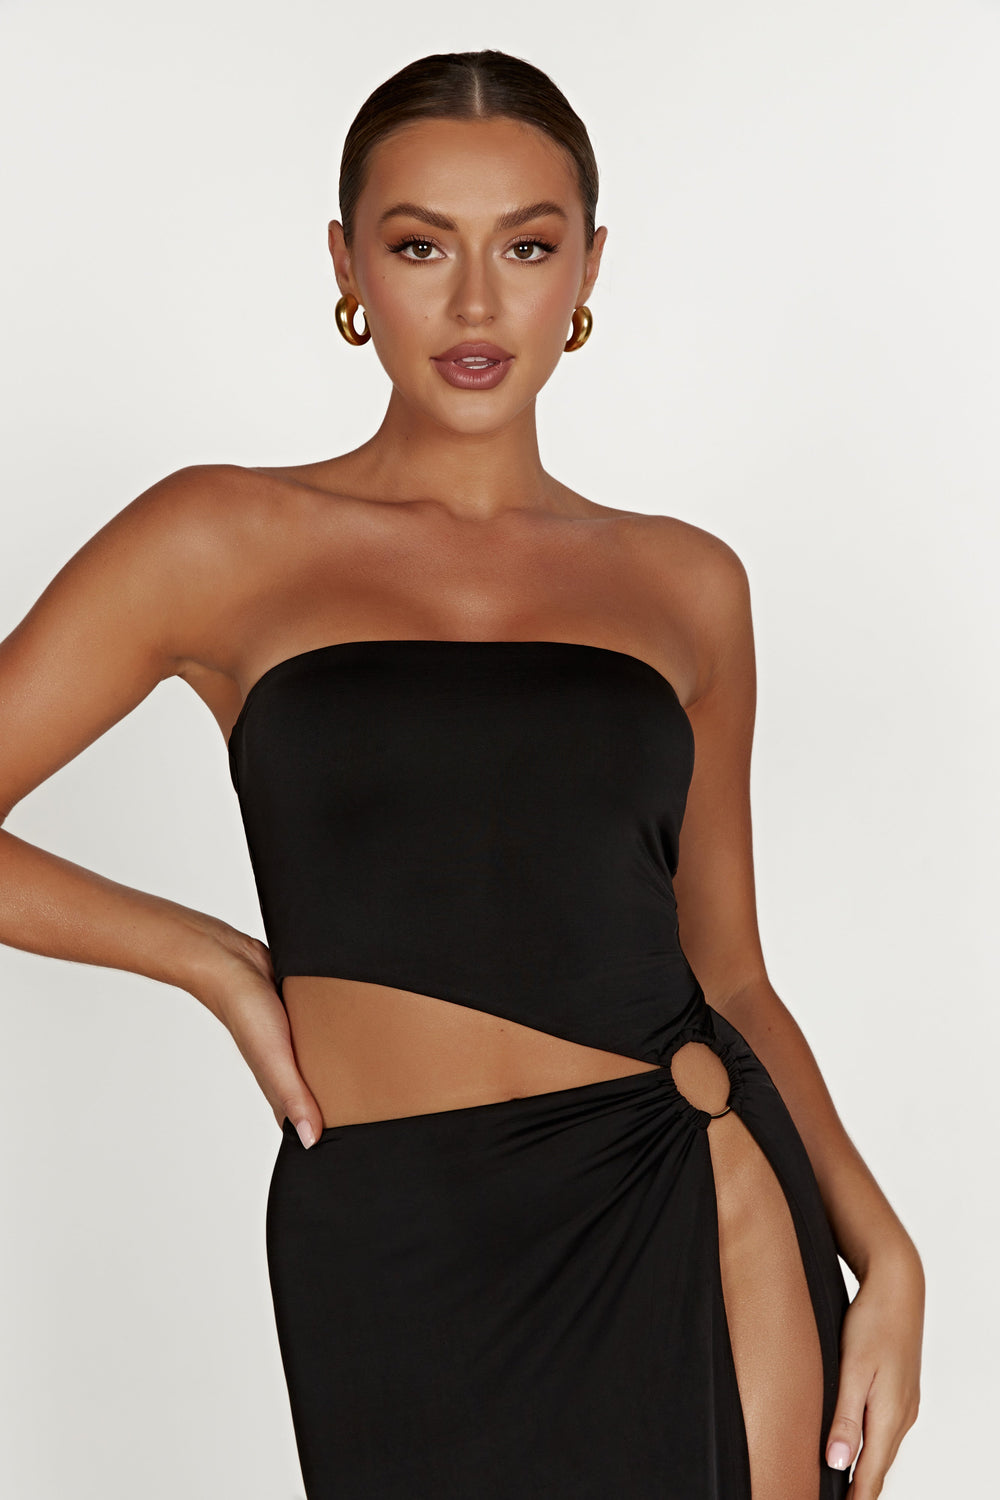 Giada O-Ring Strapless Maxi Dress - Black